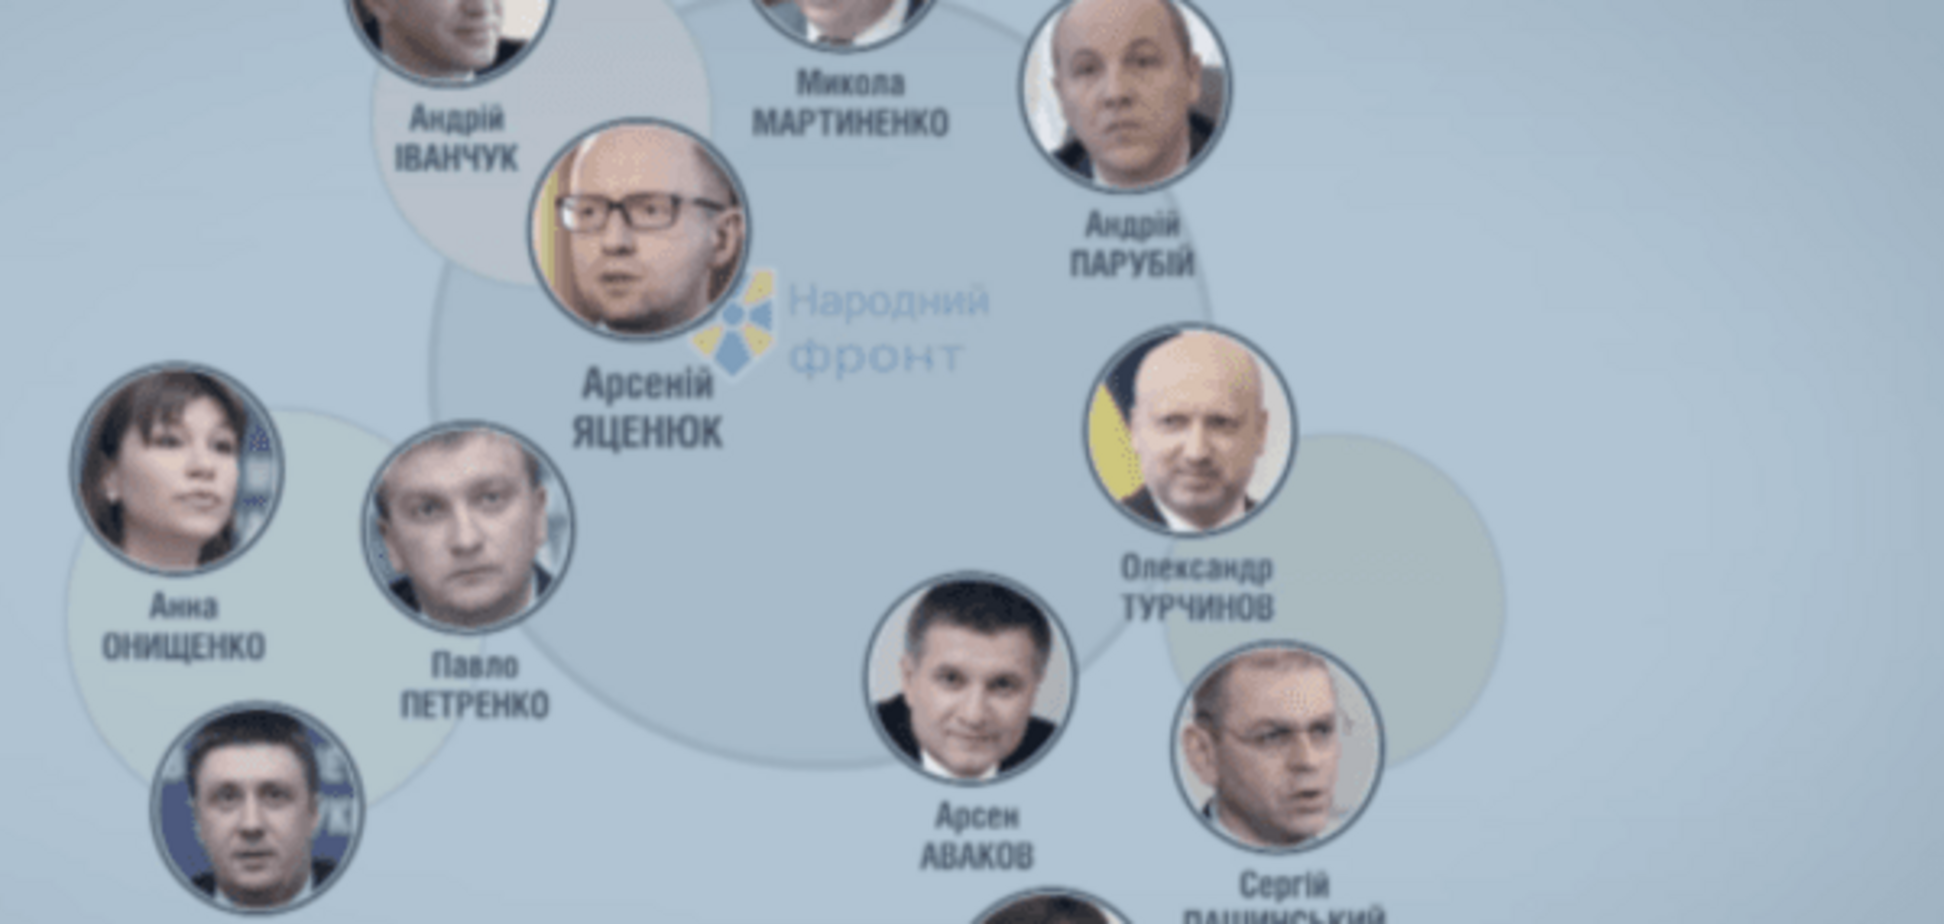 'Кто есть ху': журналисты размотали 'клубок' из олигархов в партии Яценюка. Видеорасследование